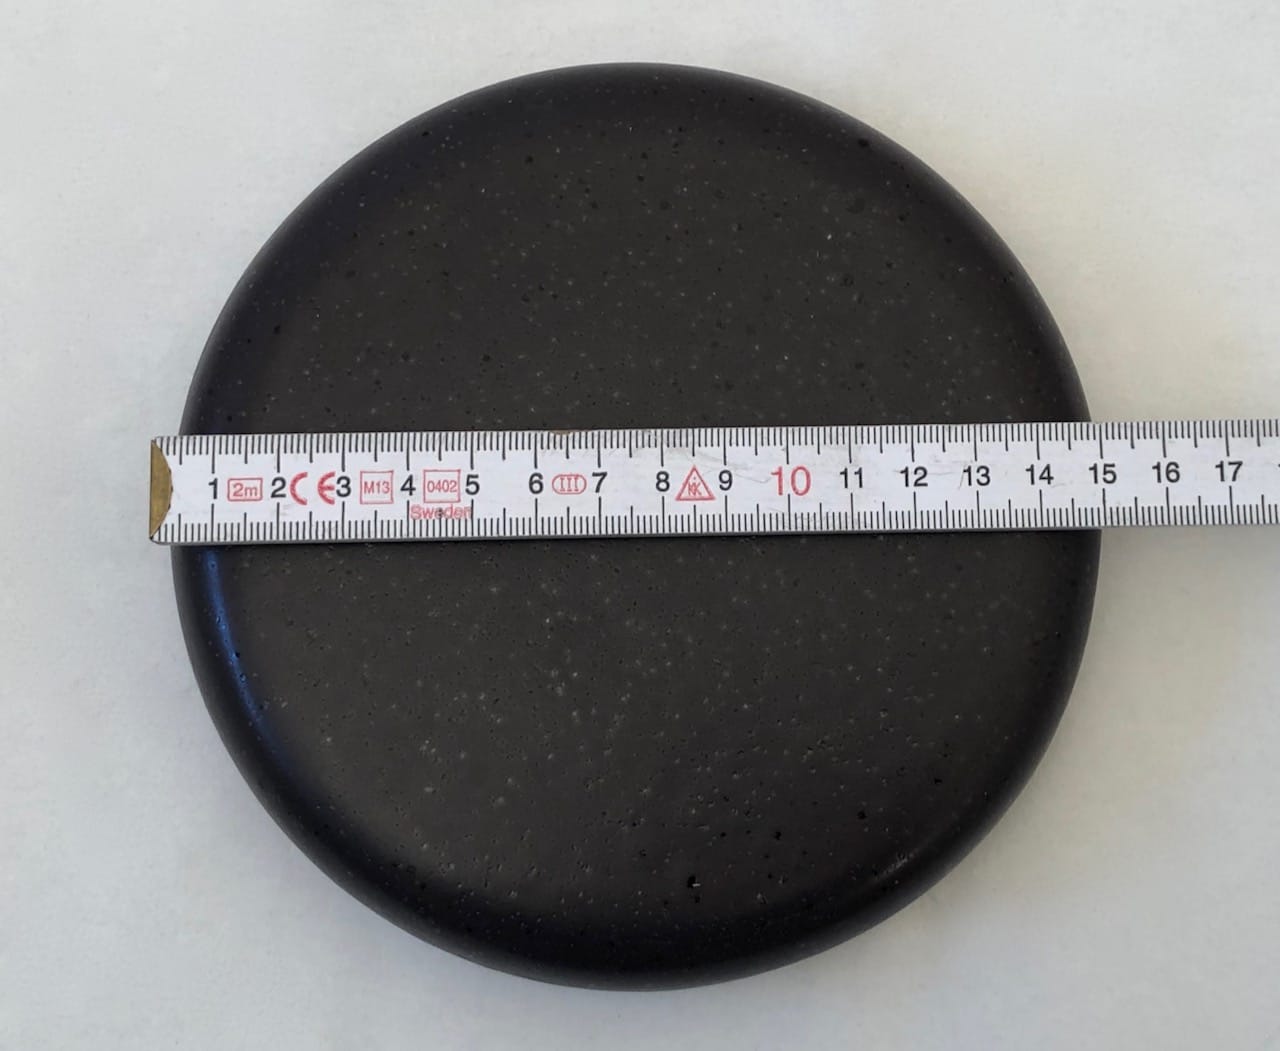 Reinigungskachel graphitgrau, Putzdeckel für Kachelofen, rund 15 cm